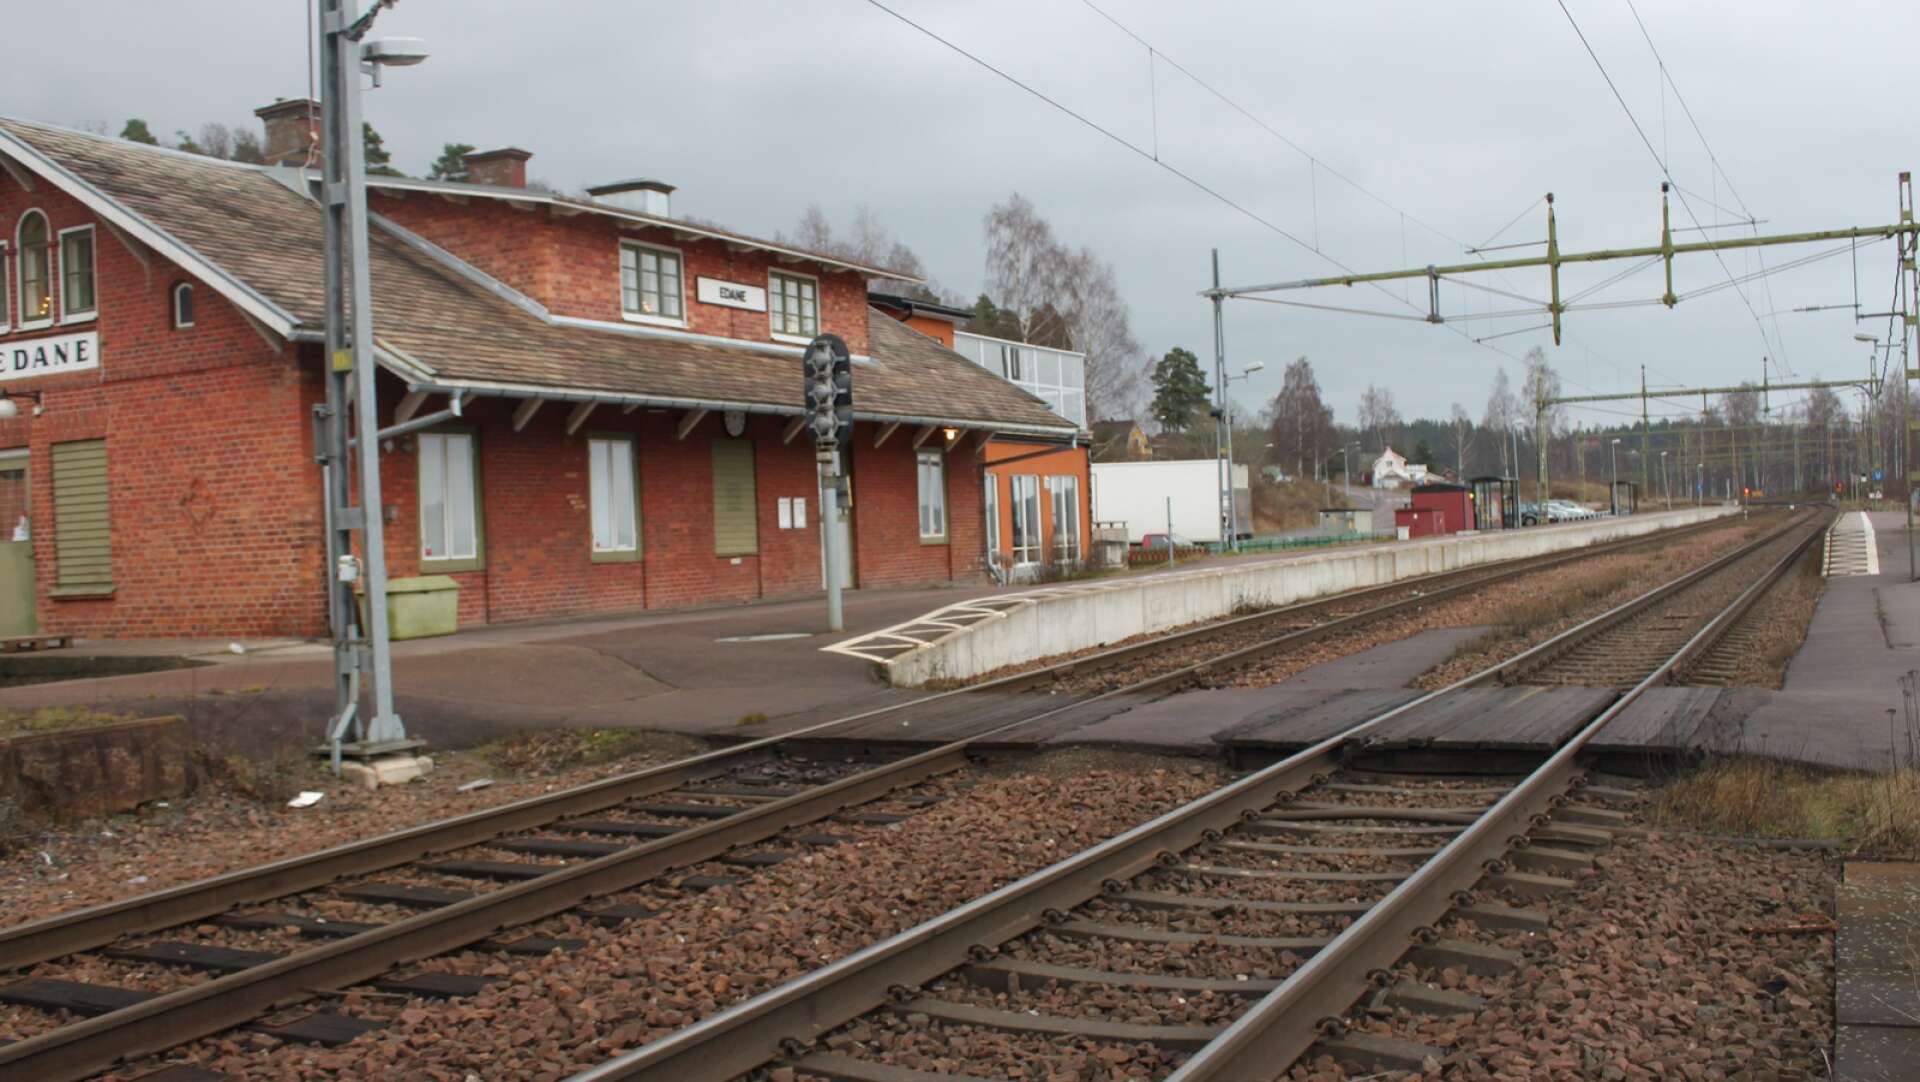 Ska stationen i Edane flyttas? Efter en omfattande utredning från Trafikverket om Värmlandsbanan har möjligheten att dra om spåret undersökts, på lång sikt. Arkivbild.